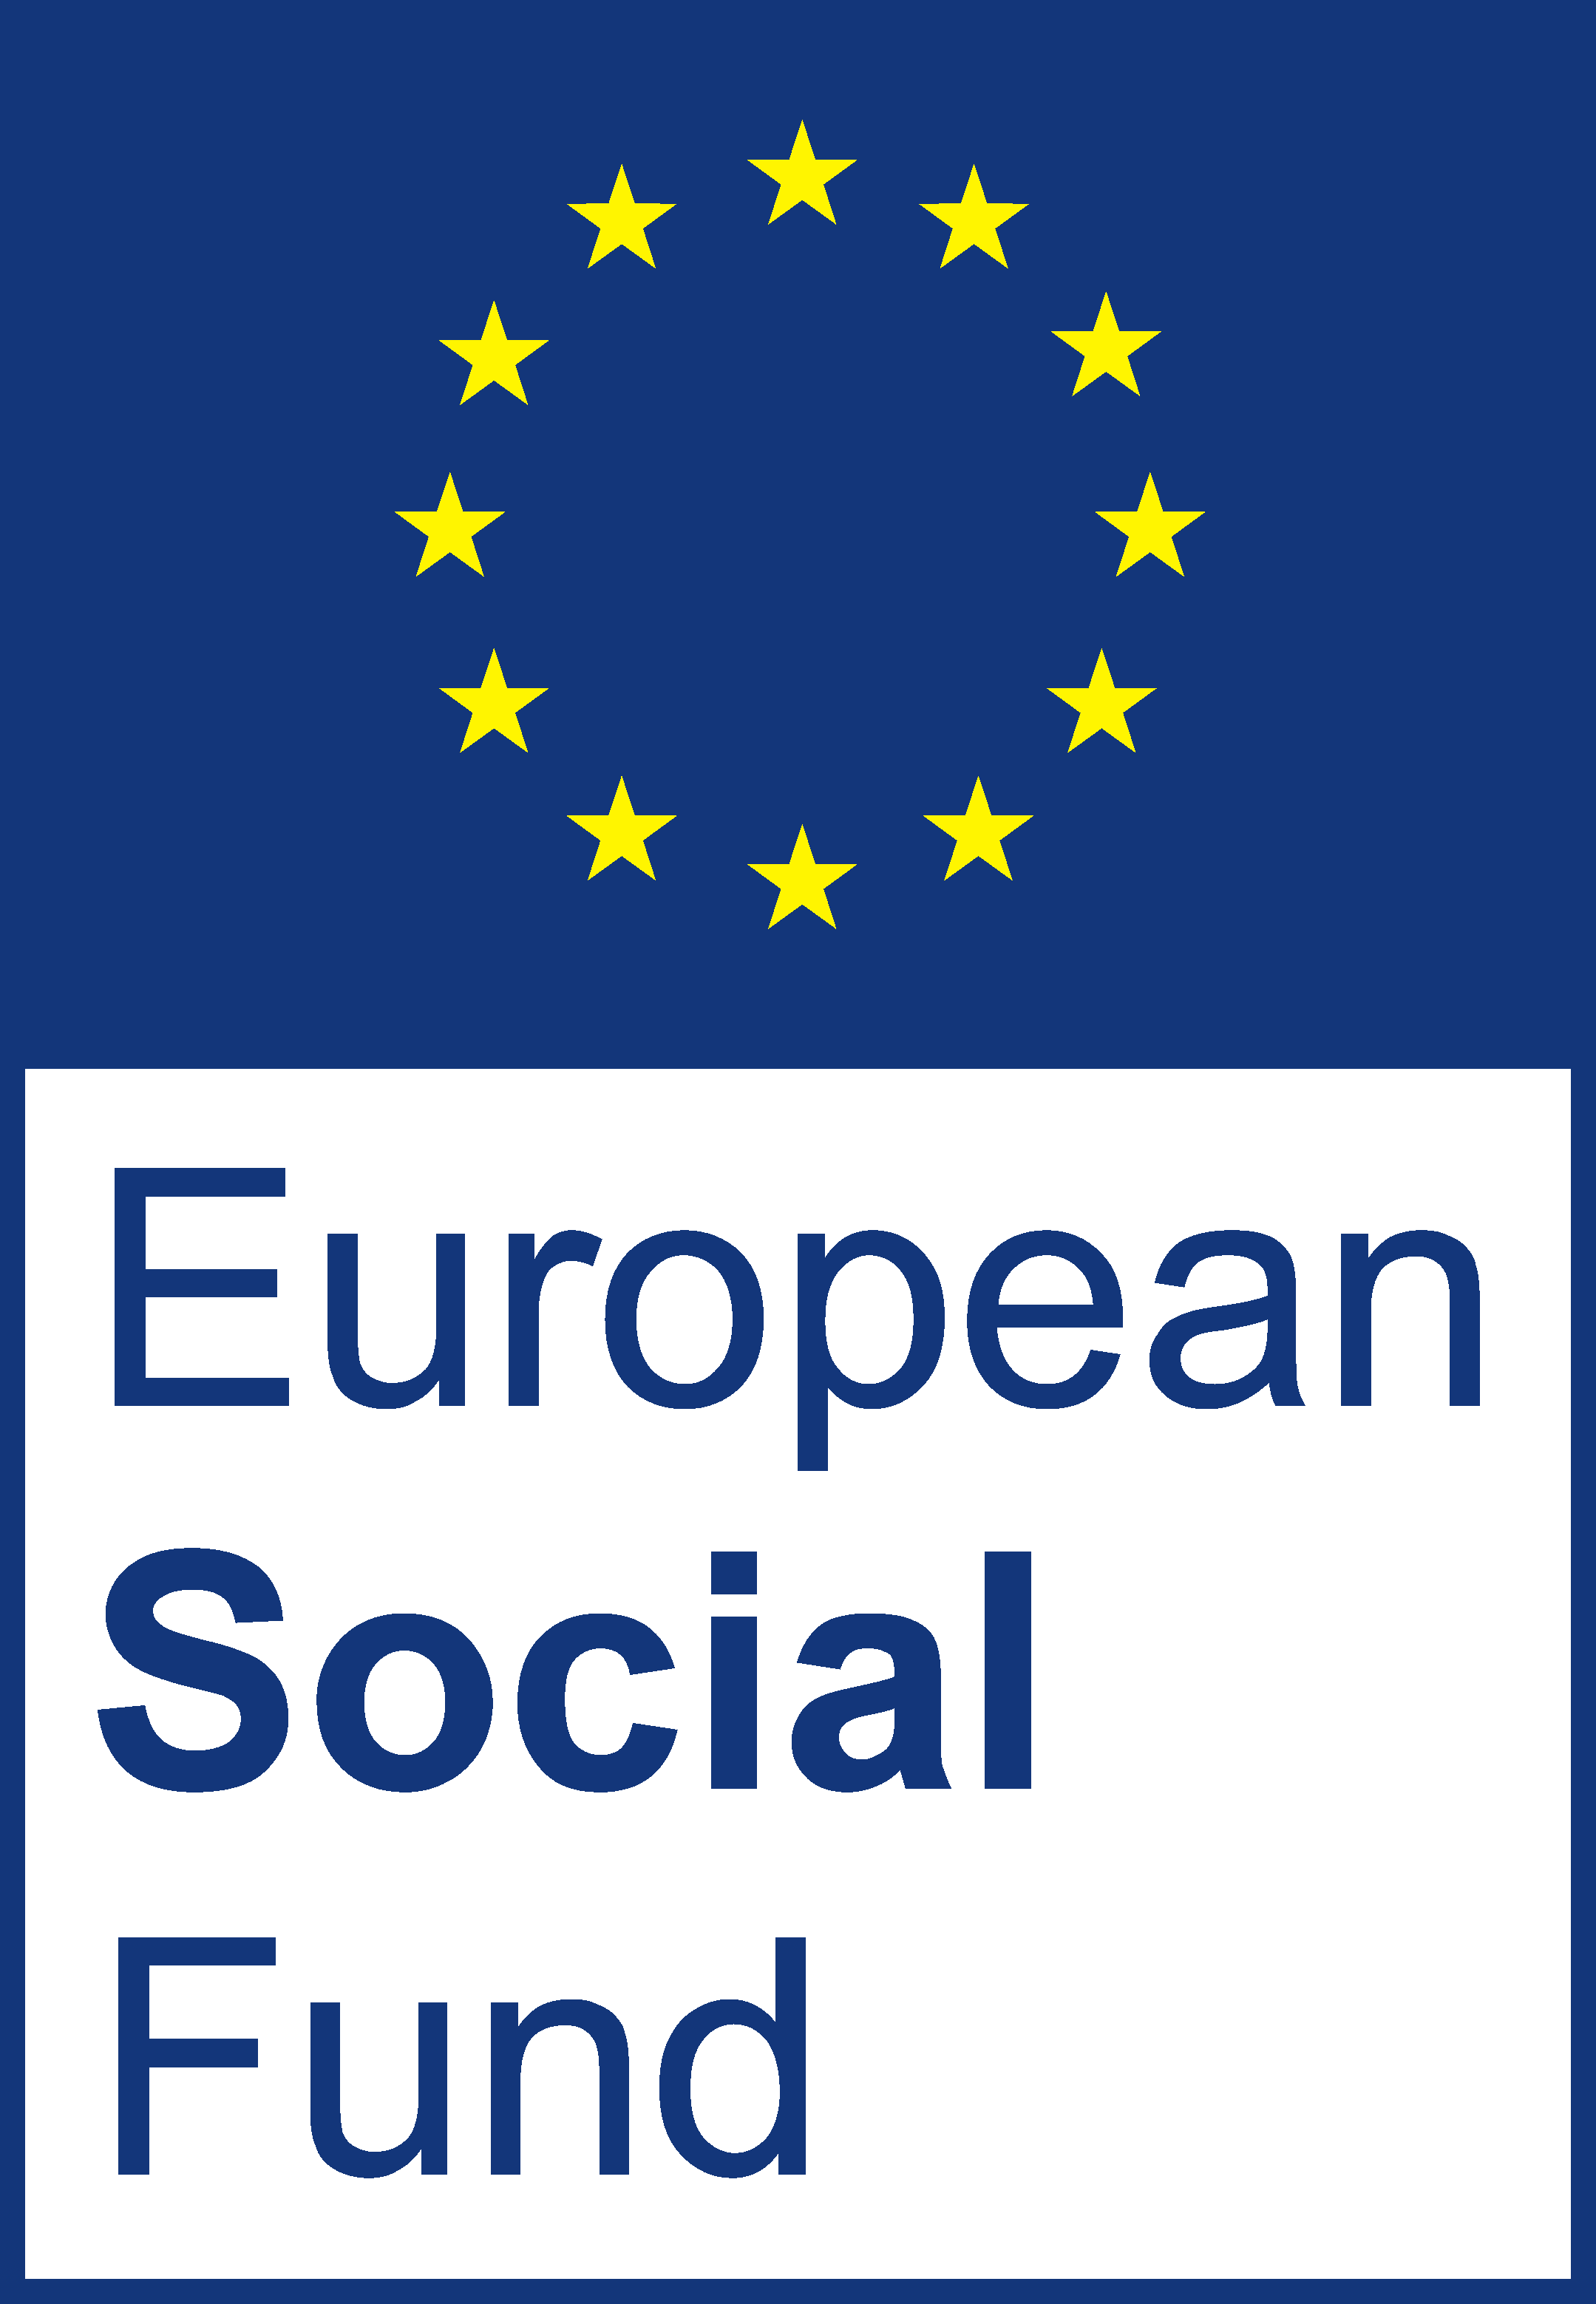 Europen social fund